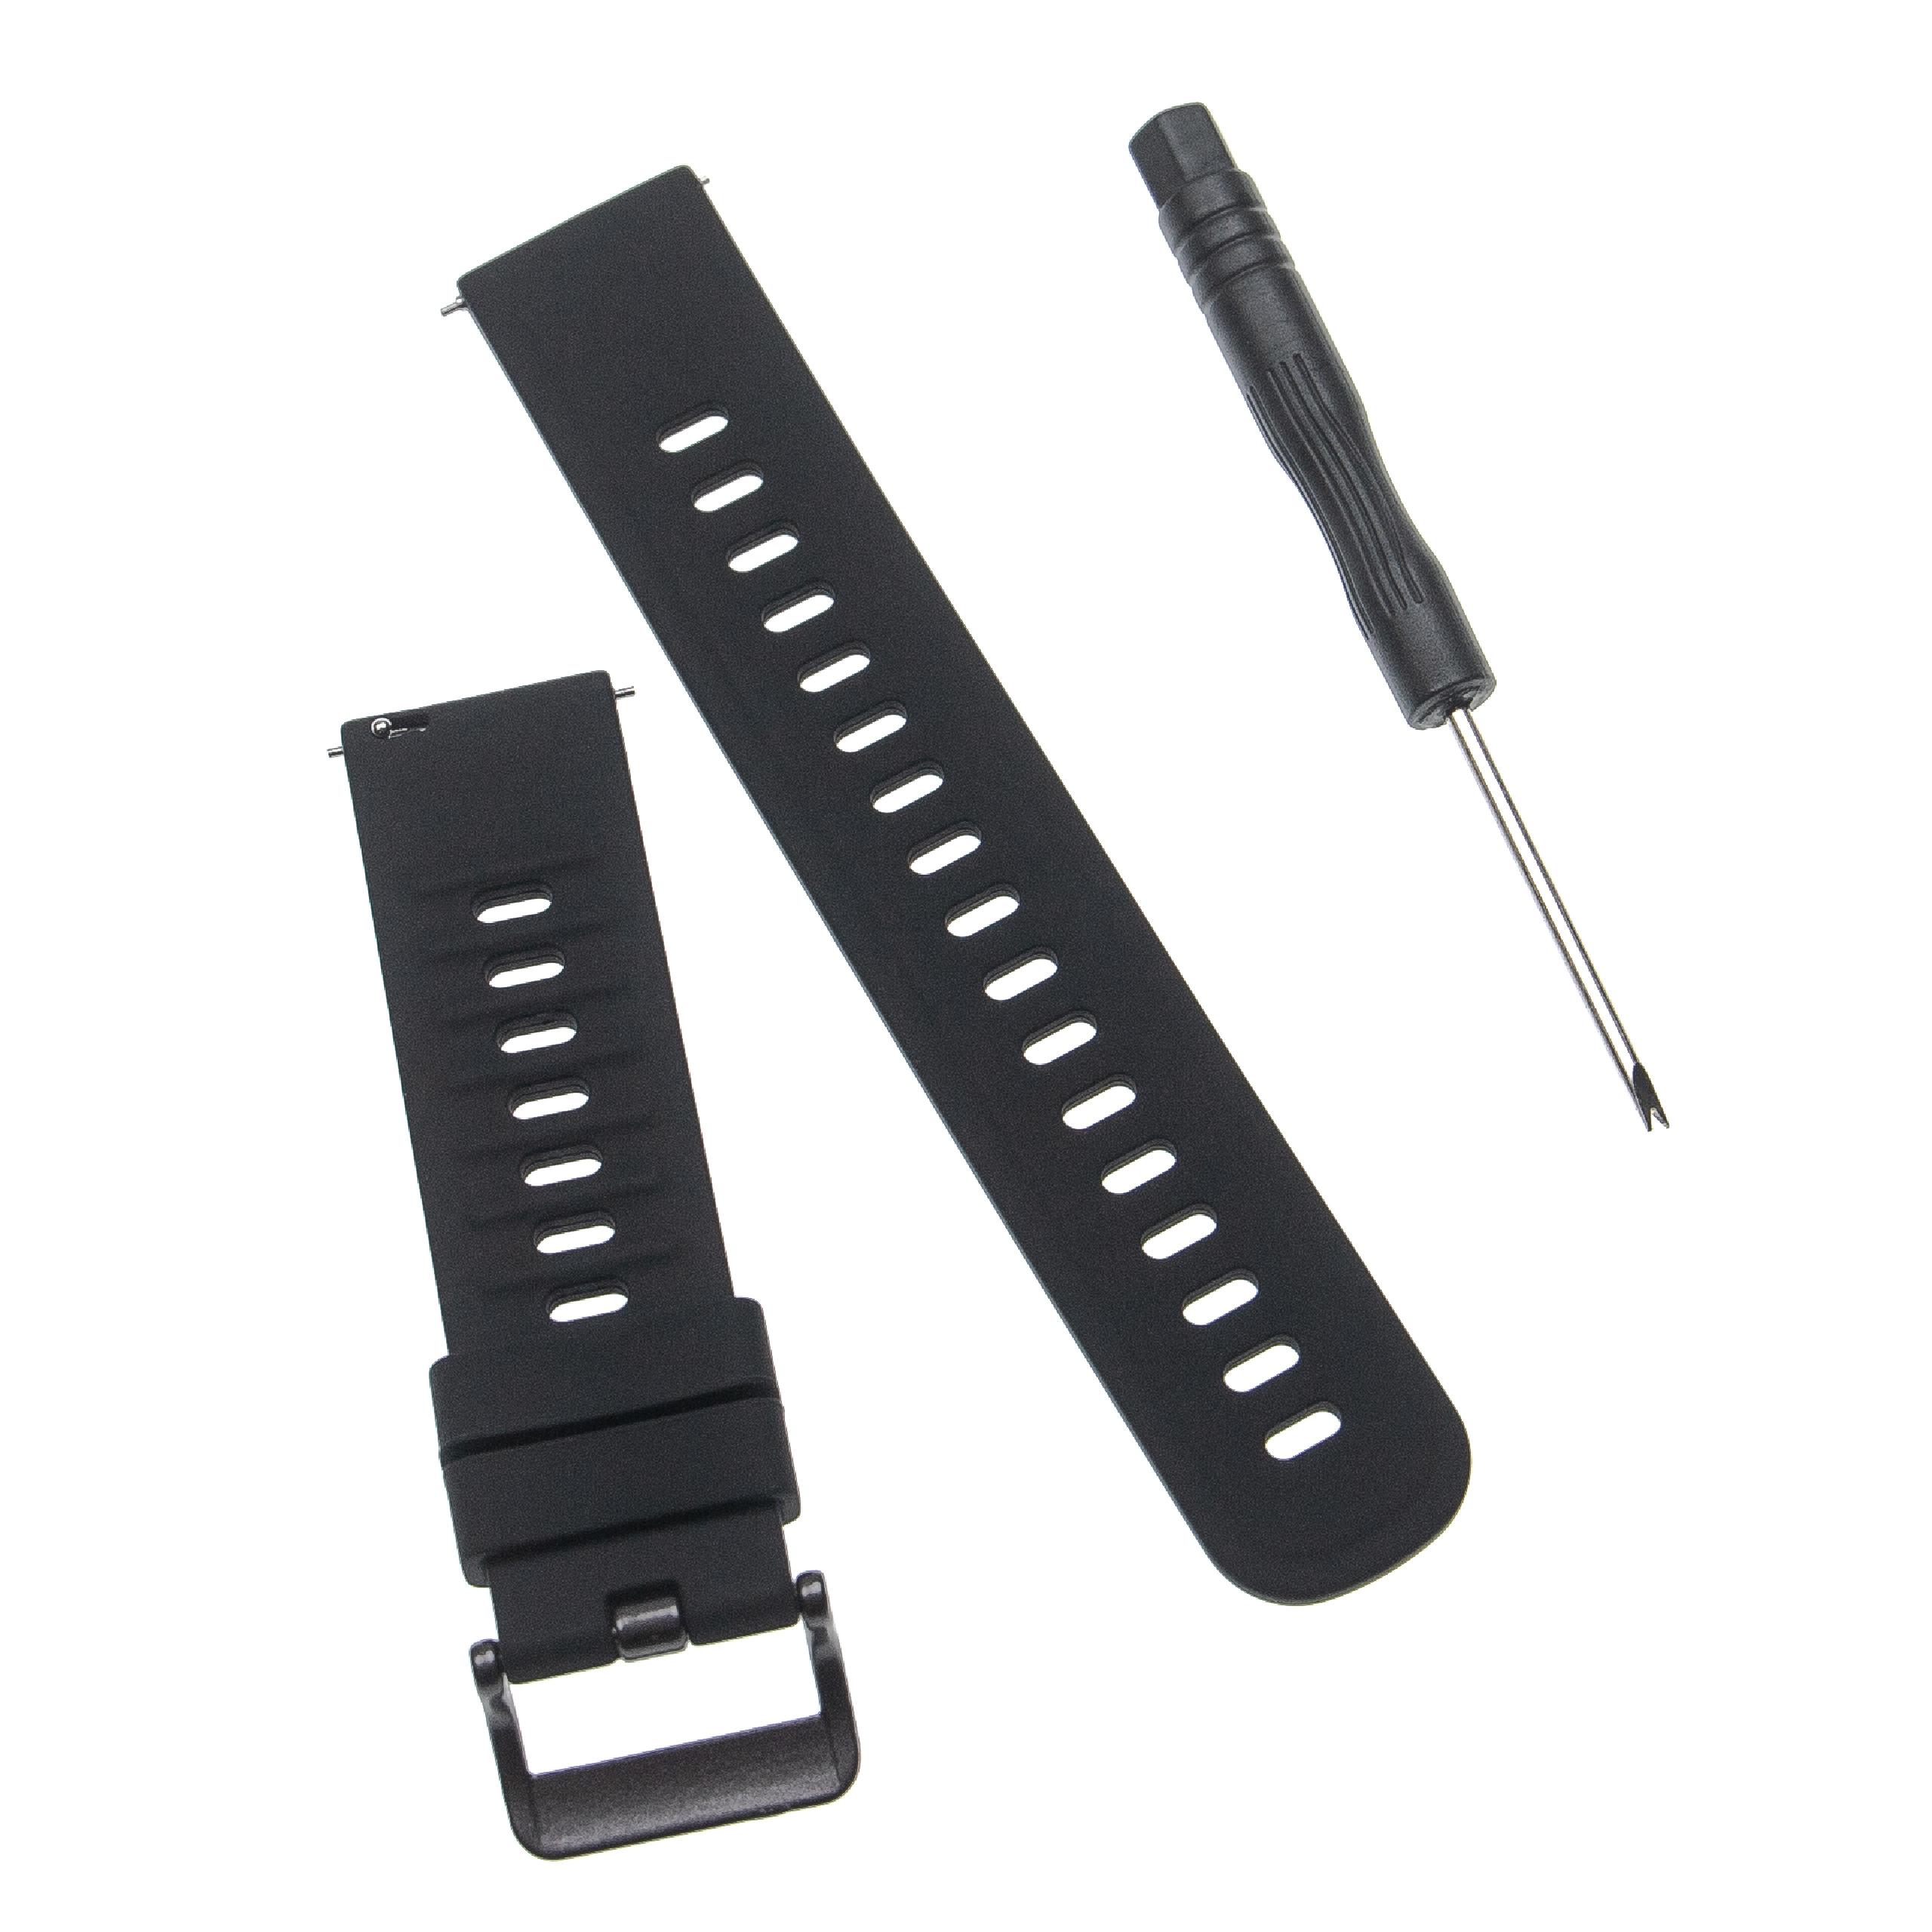 Pasek do smartwatch Amazfit - dł. 12 + 8,5 cm, szer. 20 mm, silikon, czarny